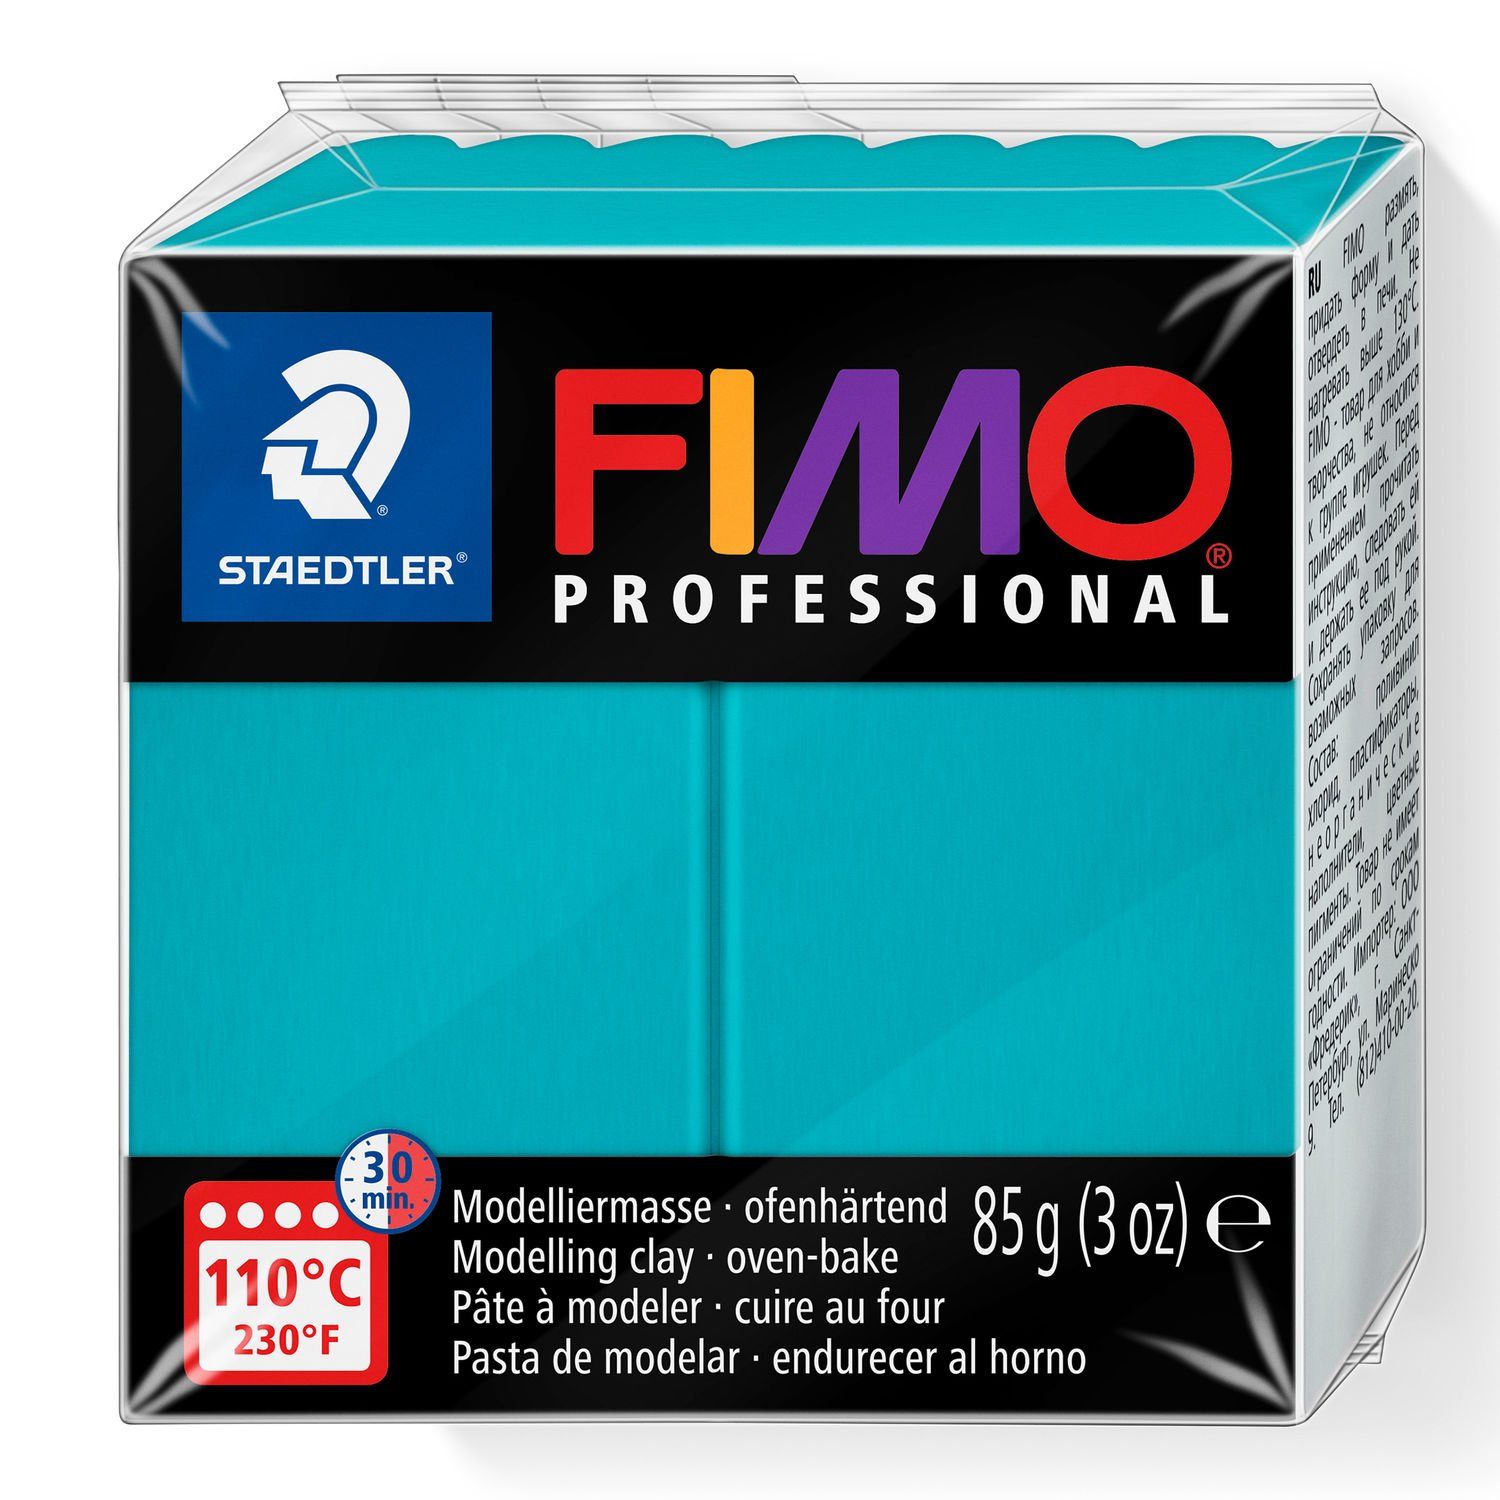 STAEDTLER FIMO 8004032 - Knetmasse - Türkis - Erwachsene - 1 Farben - 110 °C - 30 min